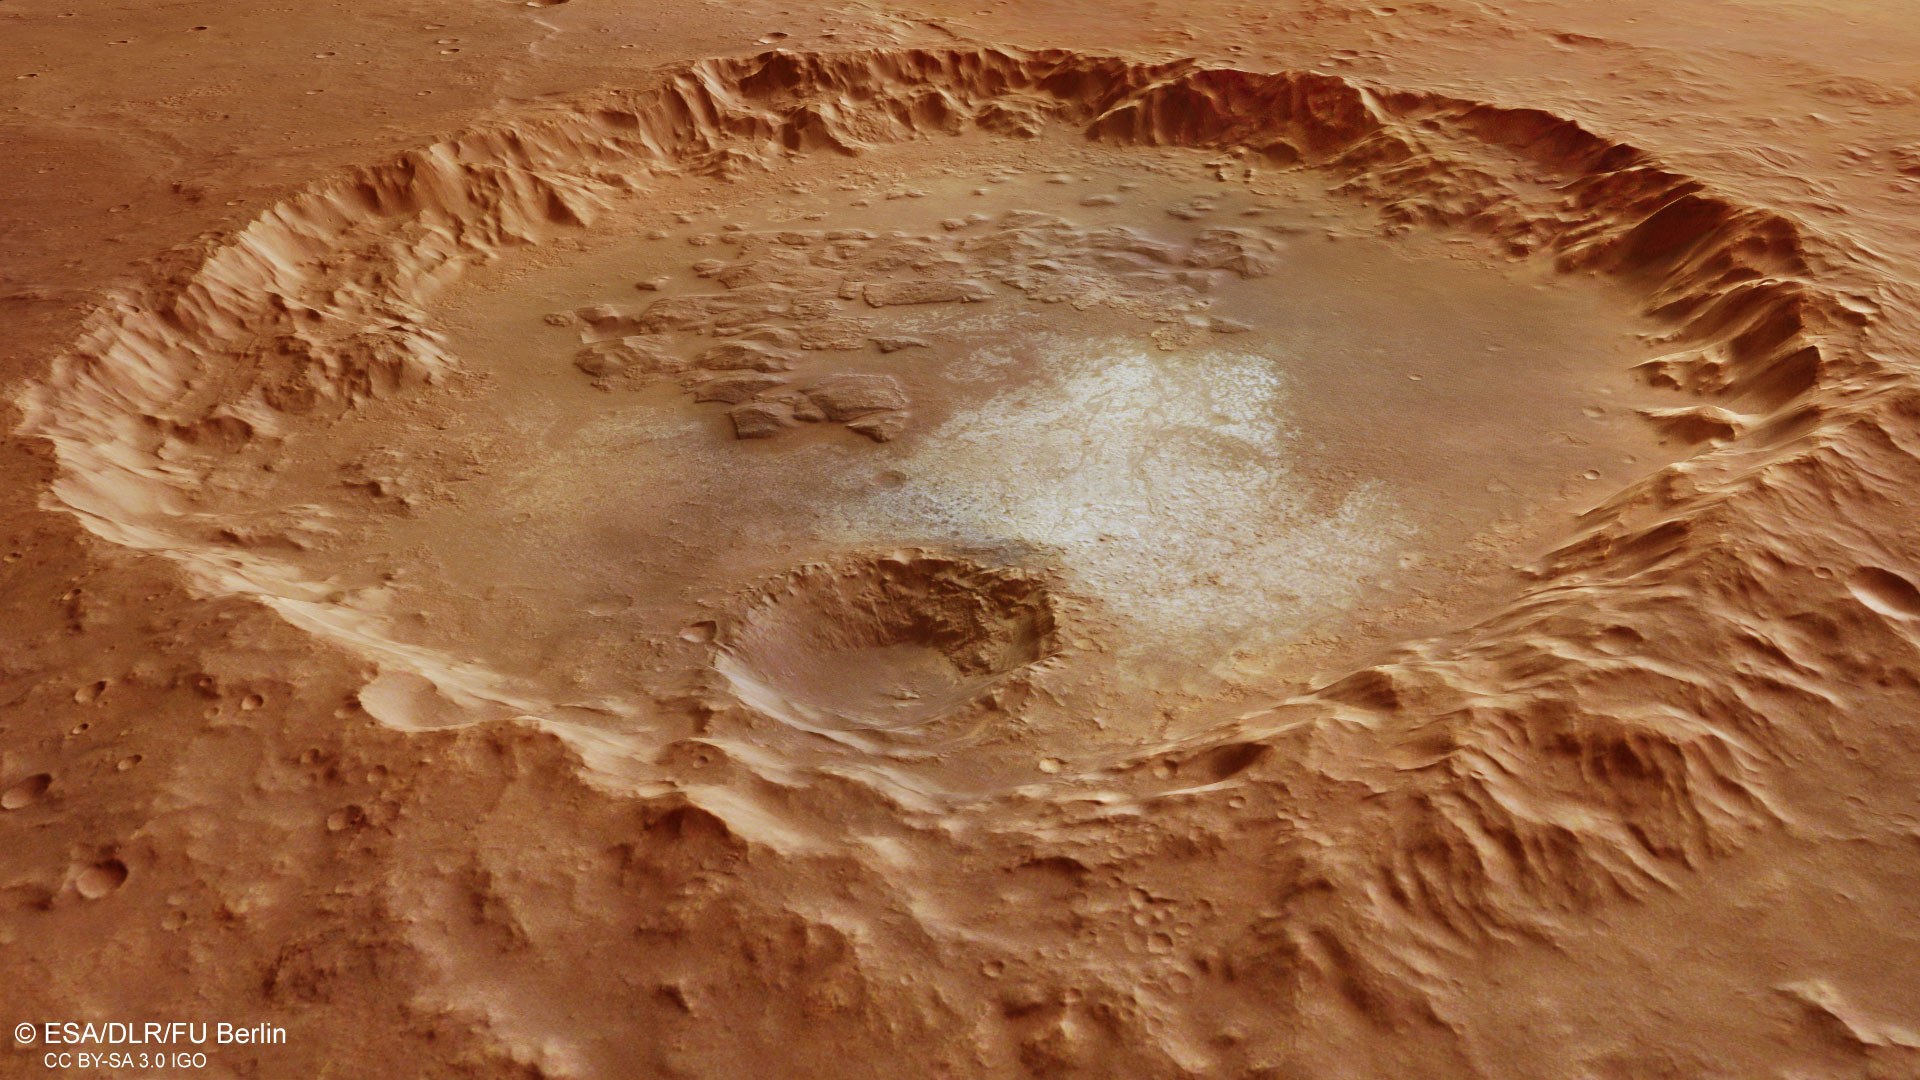 Krater mit hellen Ablagerungen in der südlichen Hochlandregion Margaritifer Terra